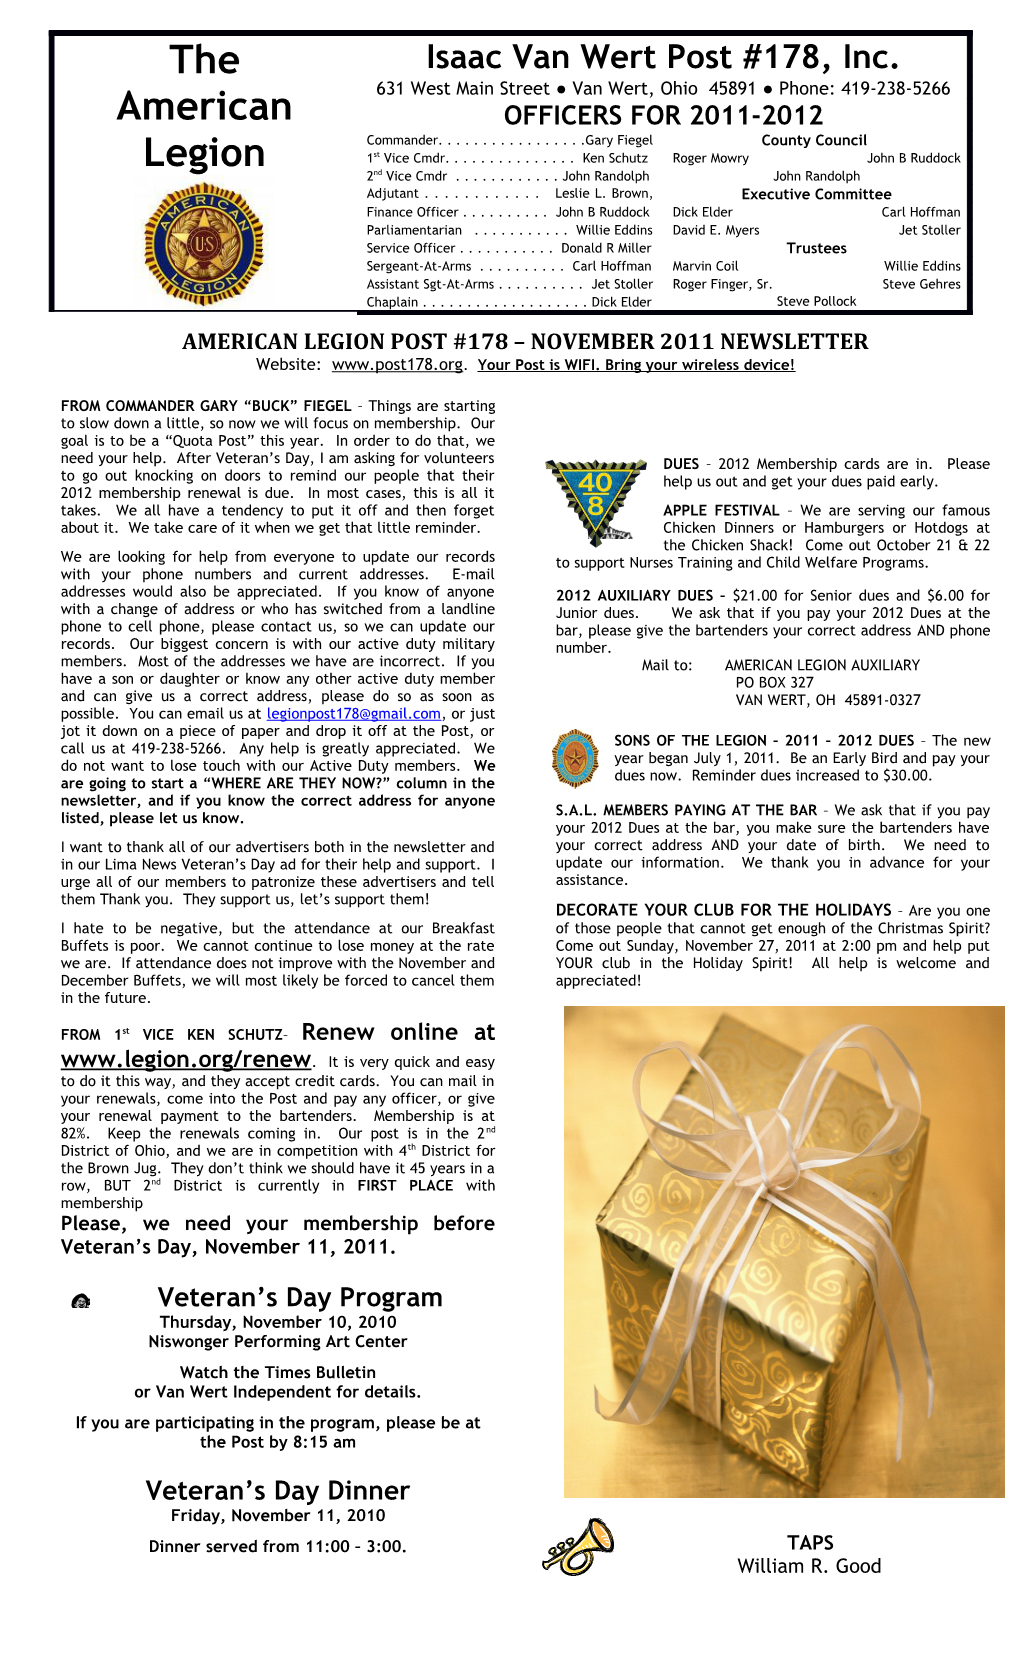 American Legion Post #178 November 2011 Newsletter